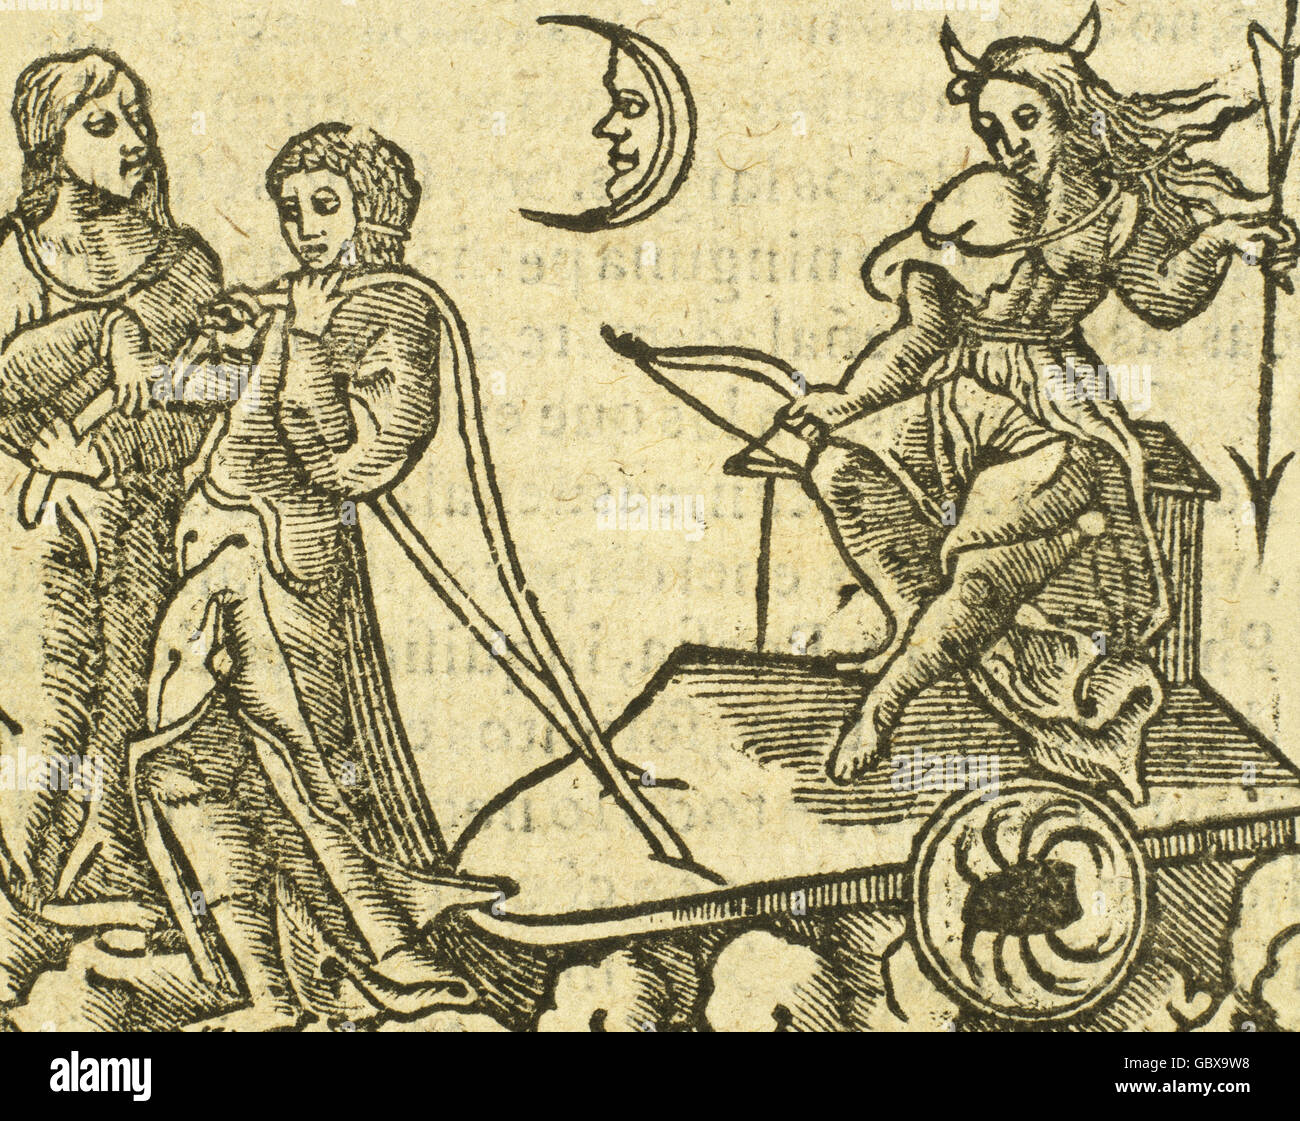 Der Mond und die Sternzeichen unter ihrem Einfluss. Gravur in "Chronografia y Repertorio de Los Tiempos", 1585 durch Francisco Vicente de Tornamira (1534-1597). Stockfoto